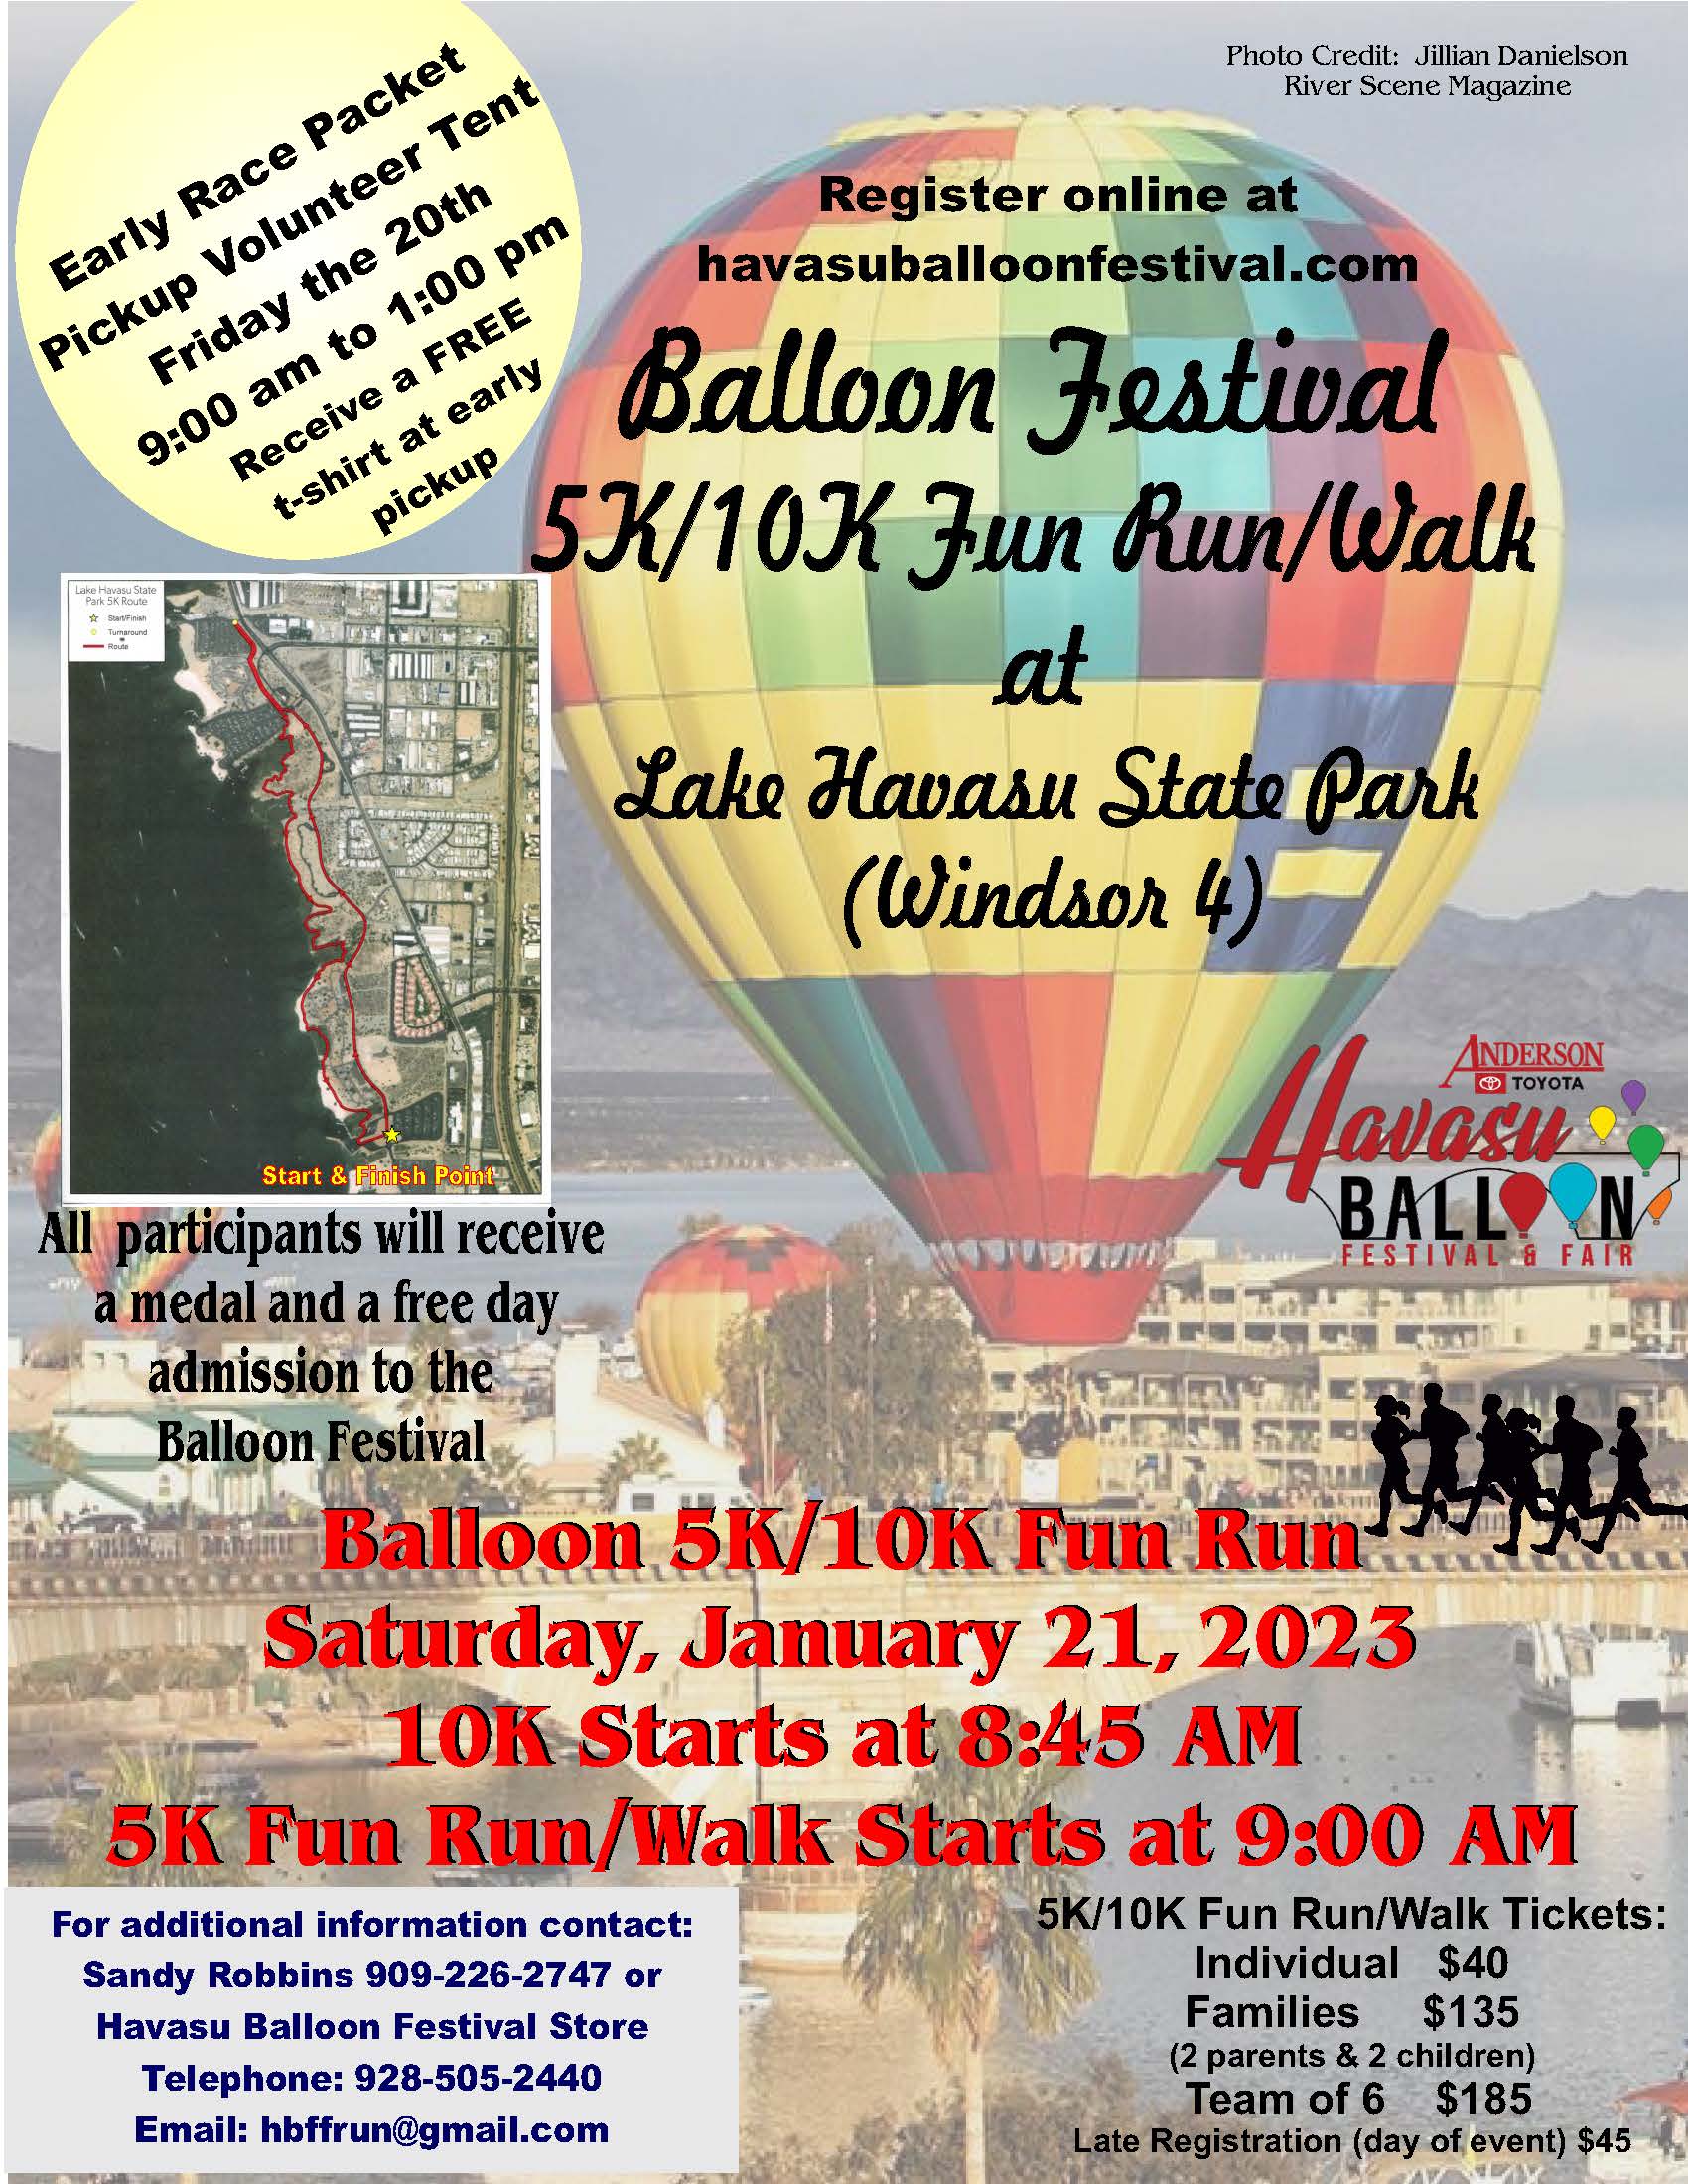 Balloon Festival 5K/10K Fun Run/Walk